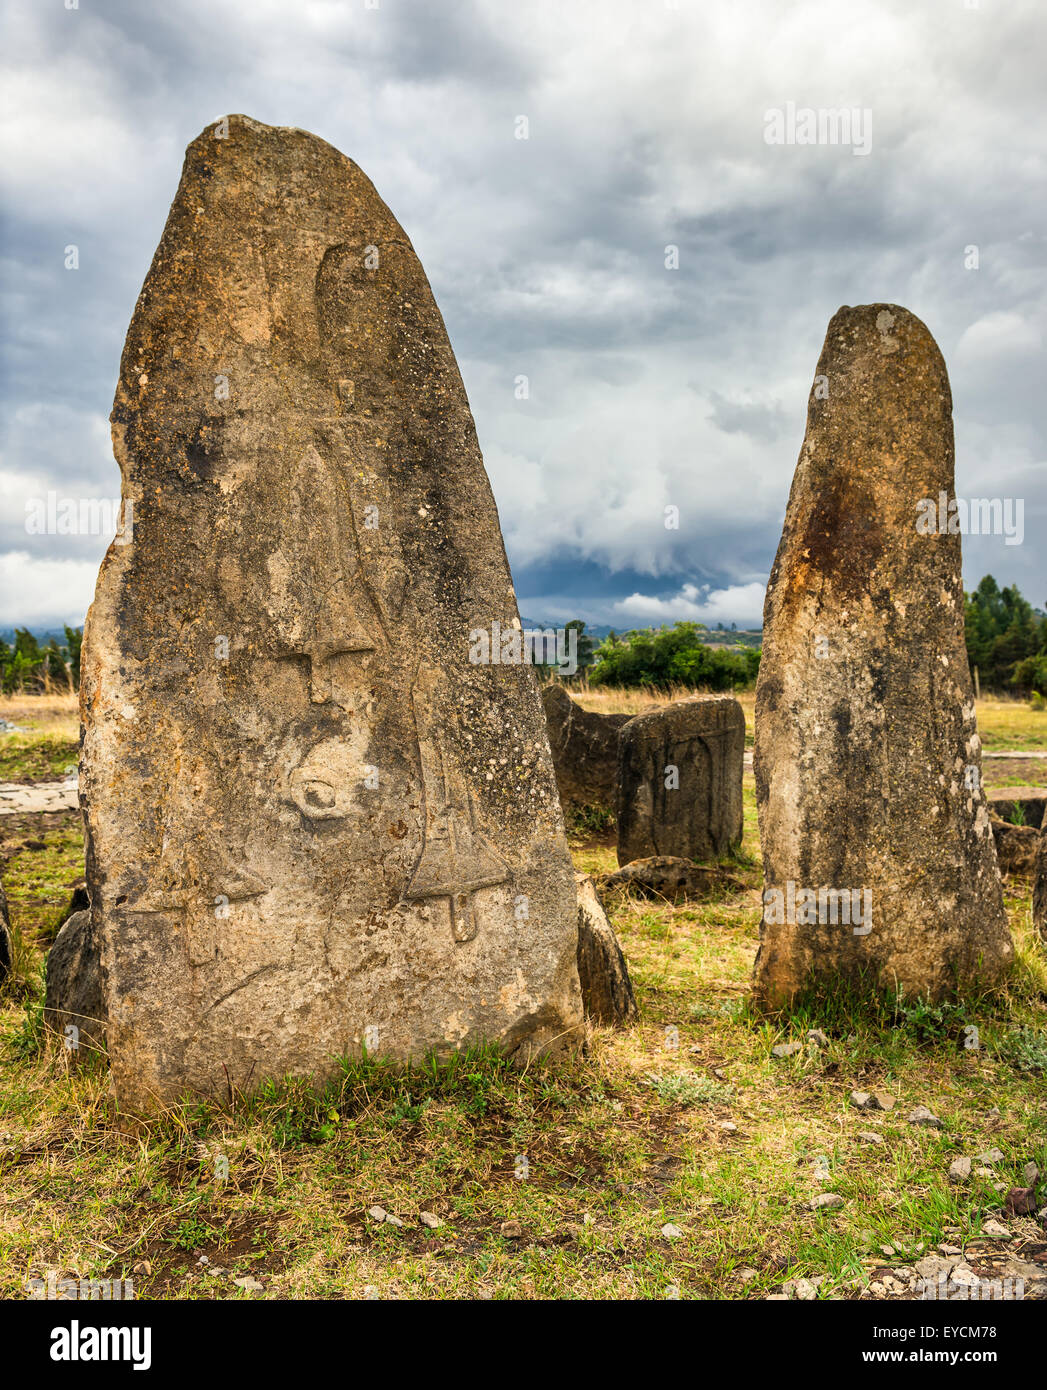 Tiya megalitico di colonne in pietra, un sito Patrimonio Mondiale dell'UNESCO vicino ad Addis Abeba, Etiopia. Foto Stock